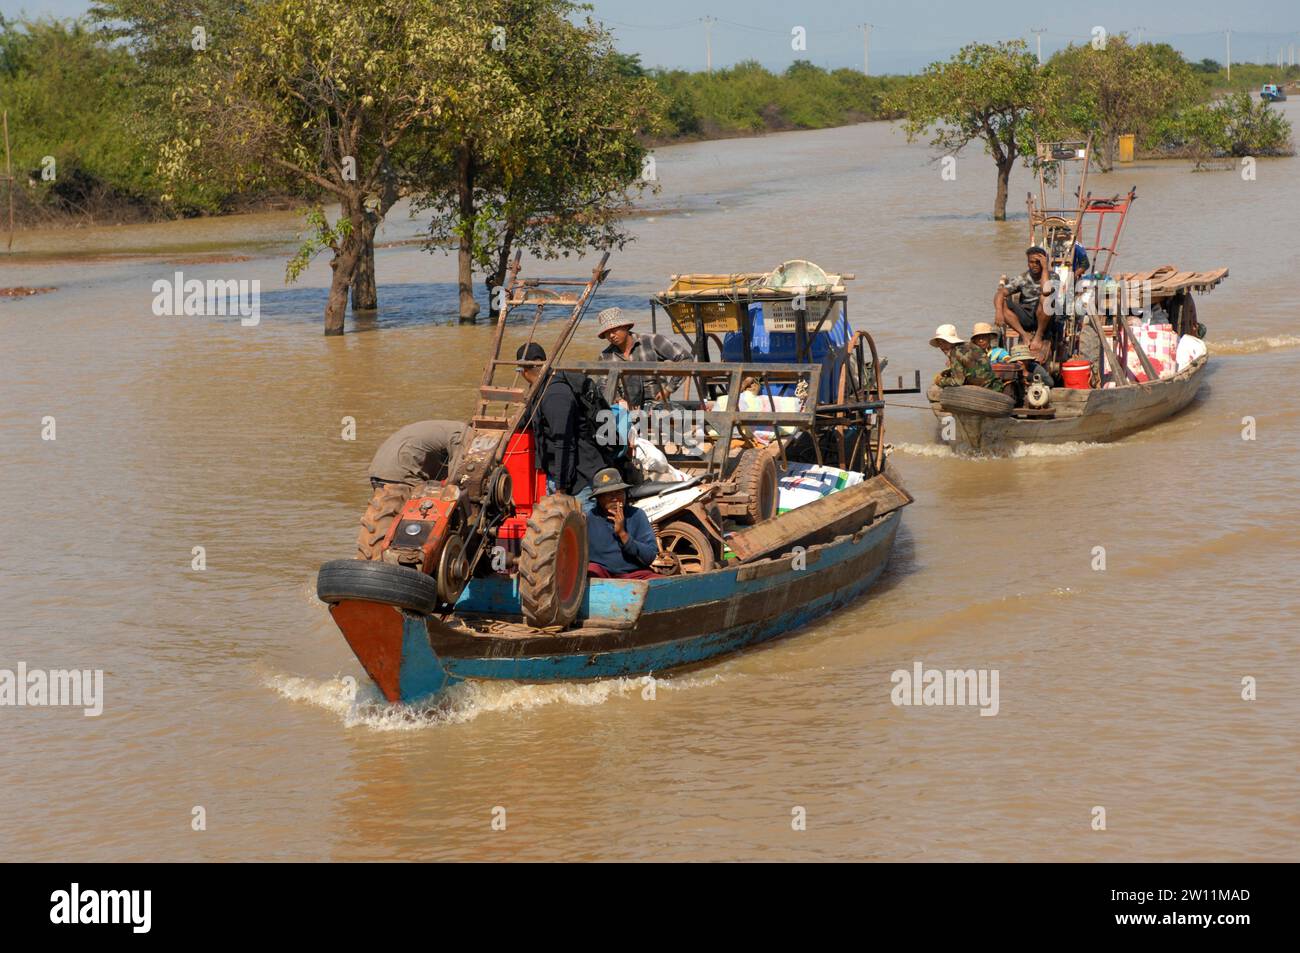 Trabajadores agrícolas que transportan maquinaria en barco, pueblo flotante Kampong Phluk en el lago Tonle Sap, Camboya, Asia. Foto de stock